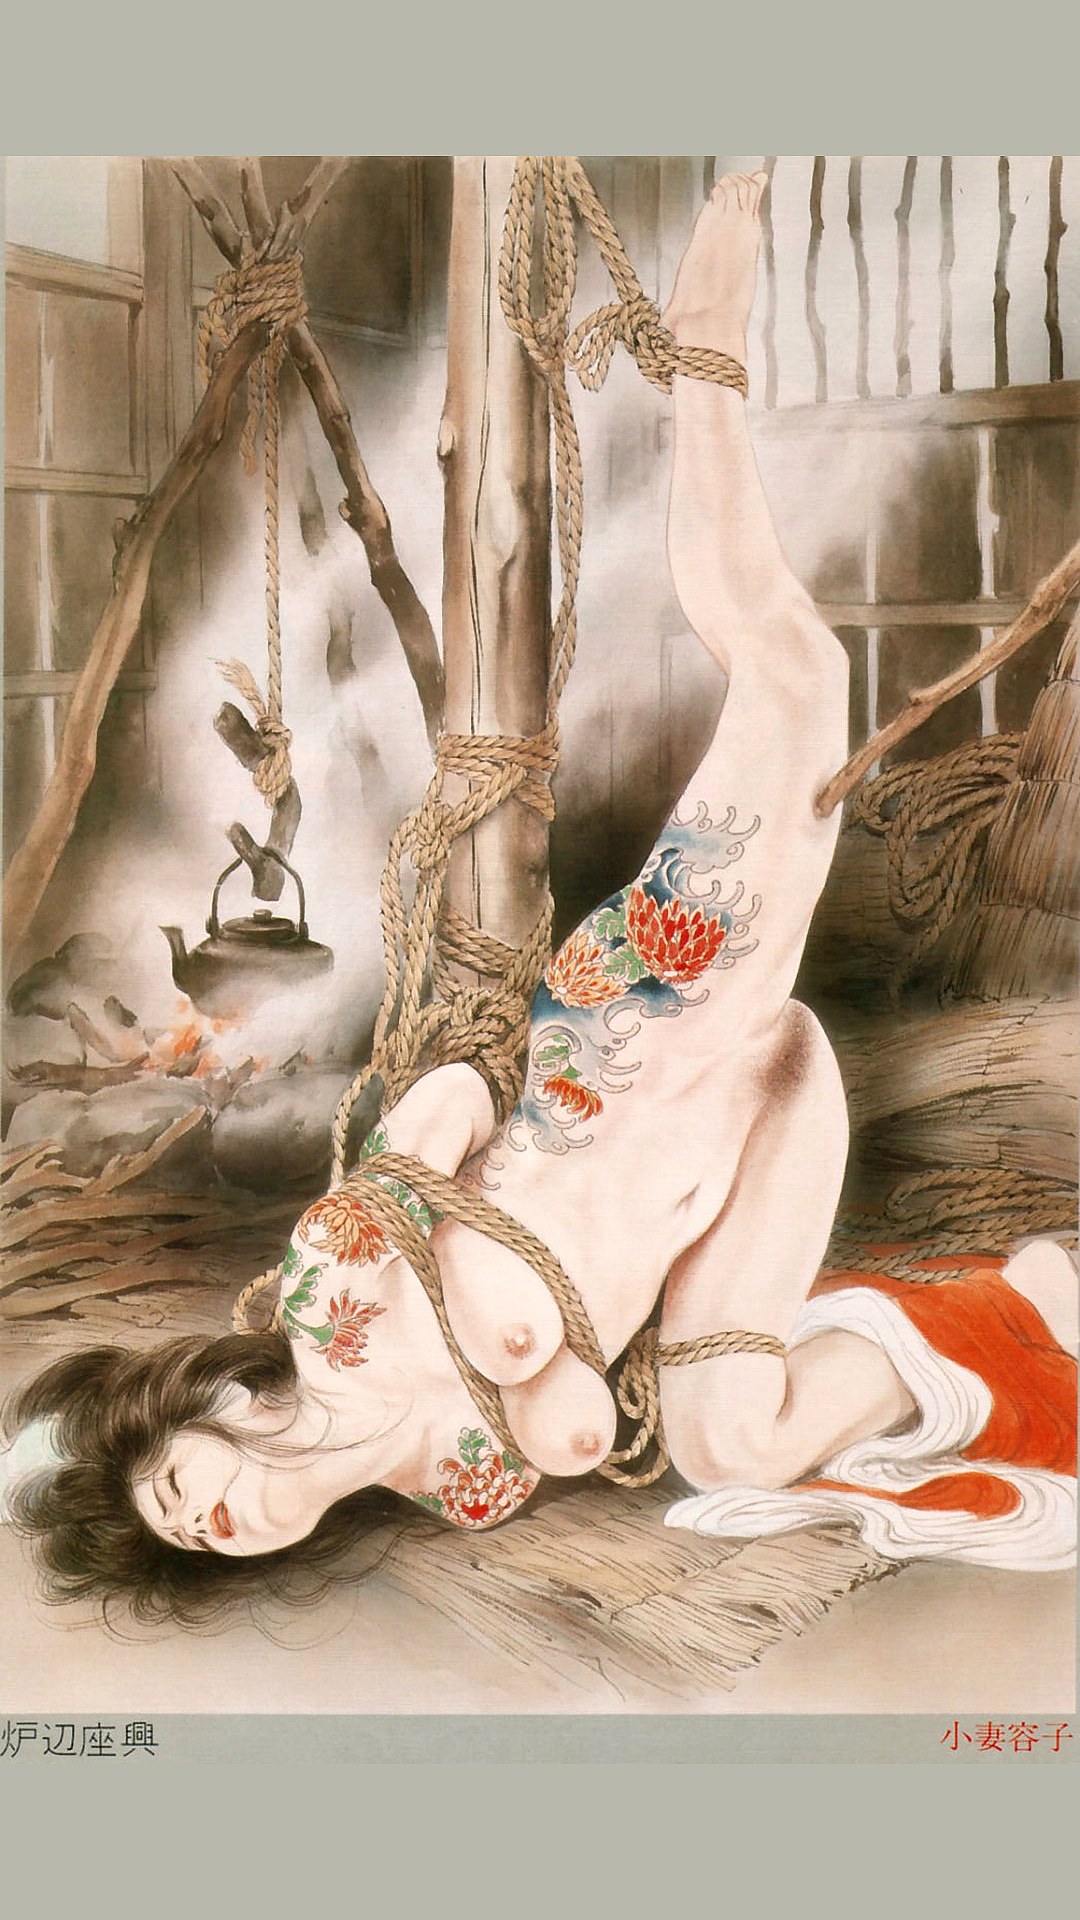 японская эротика арт фото 24